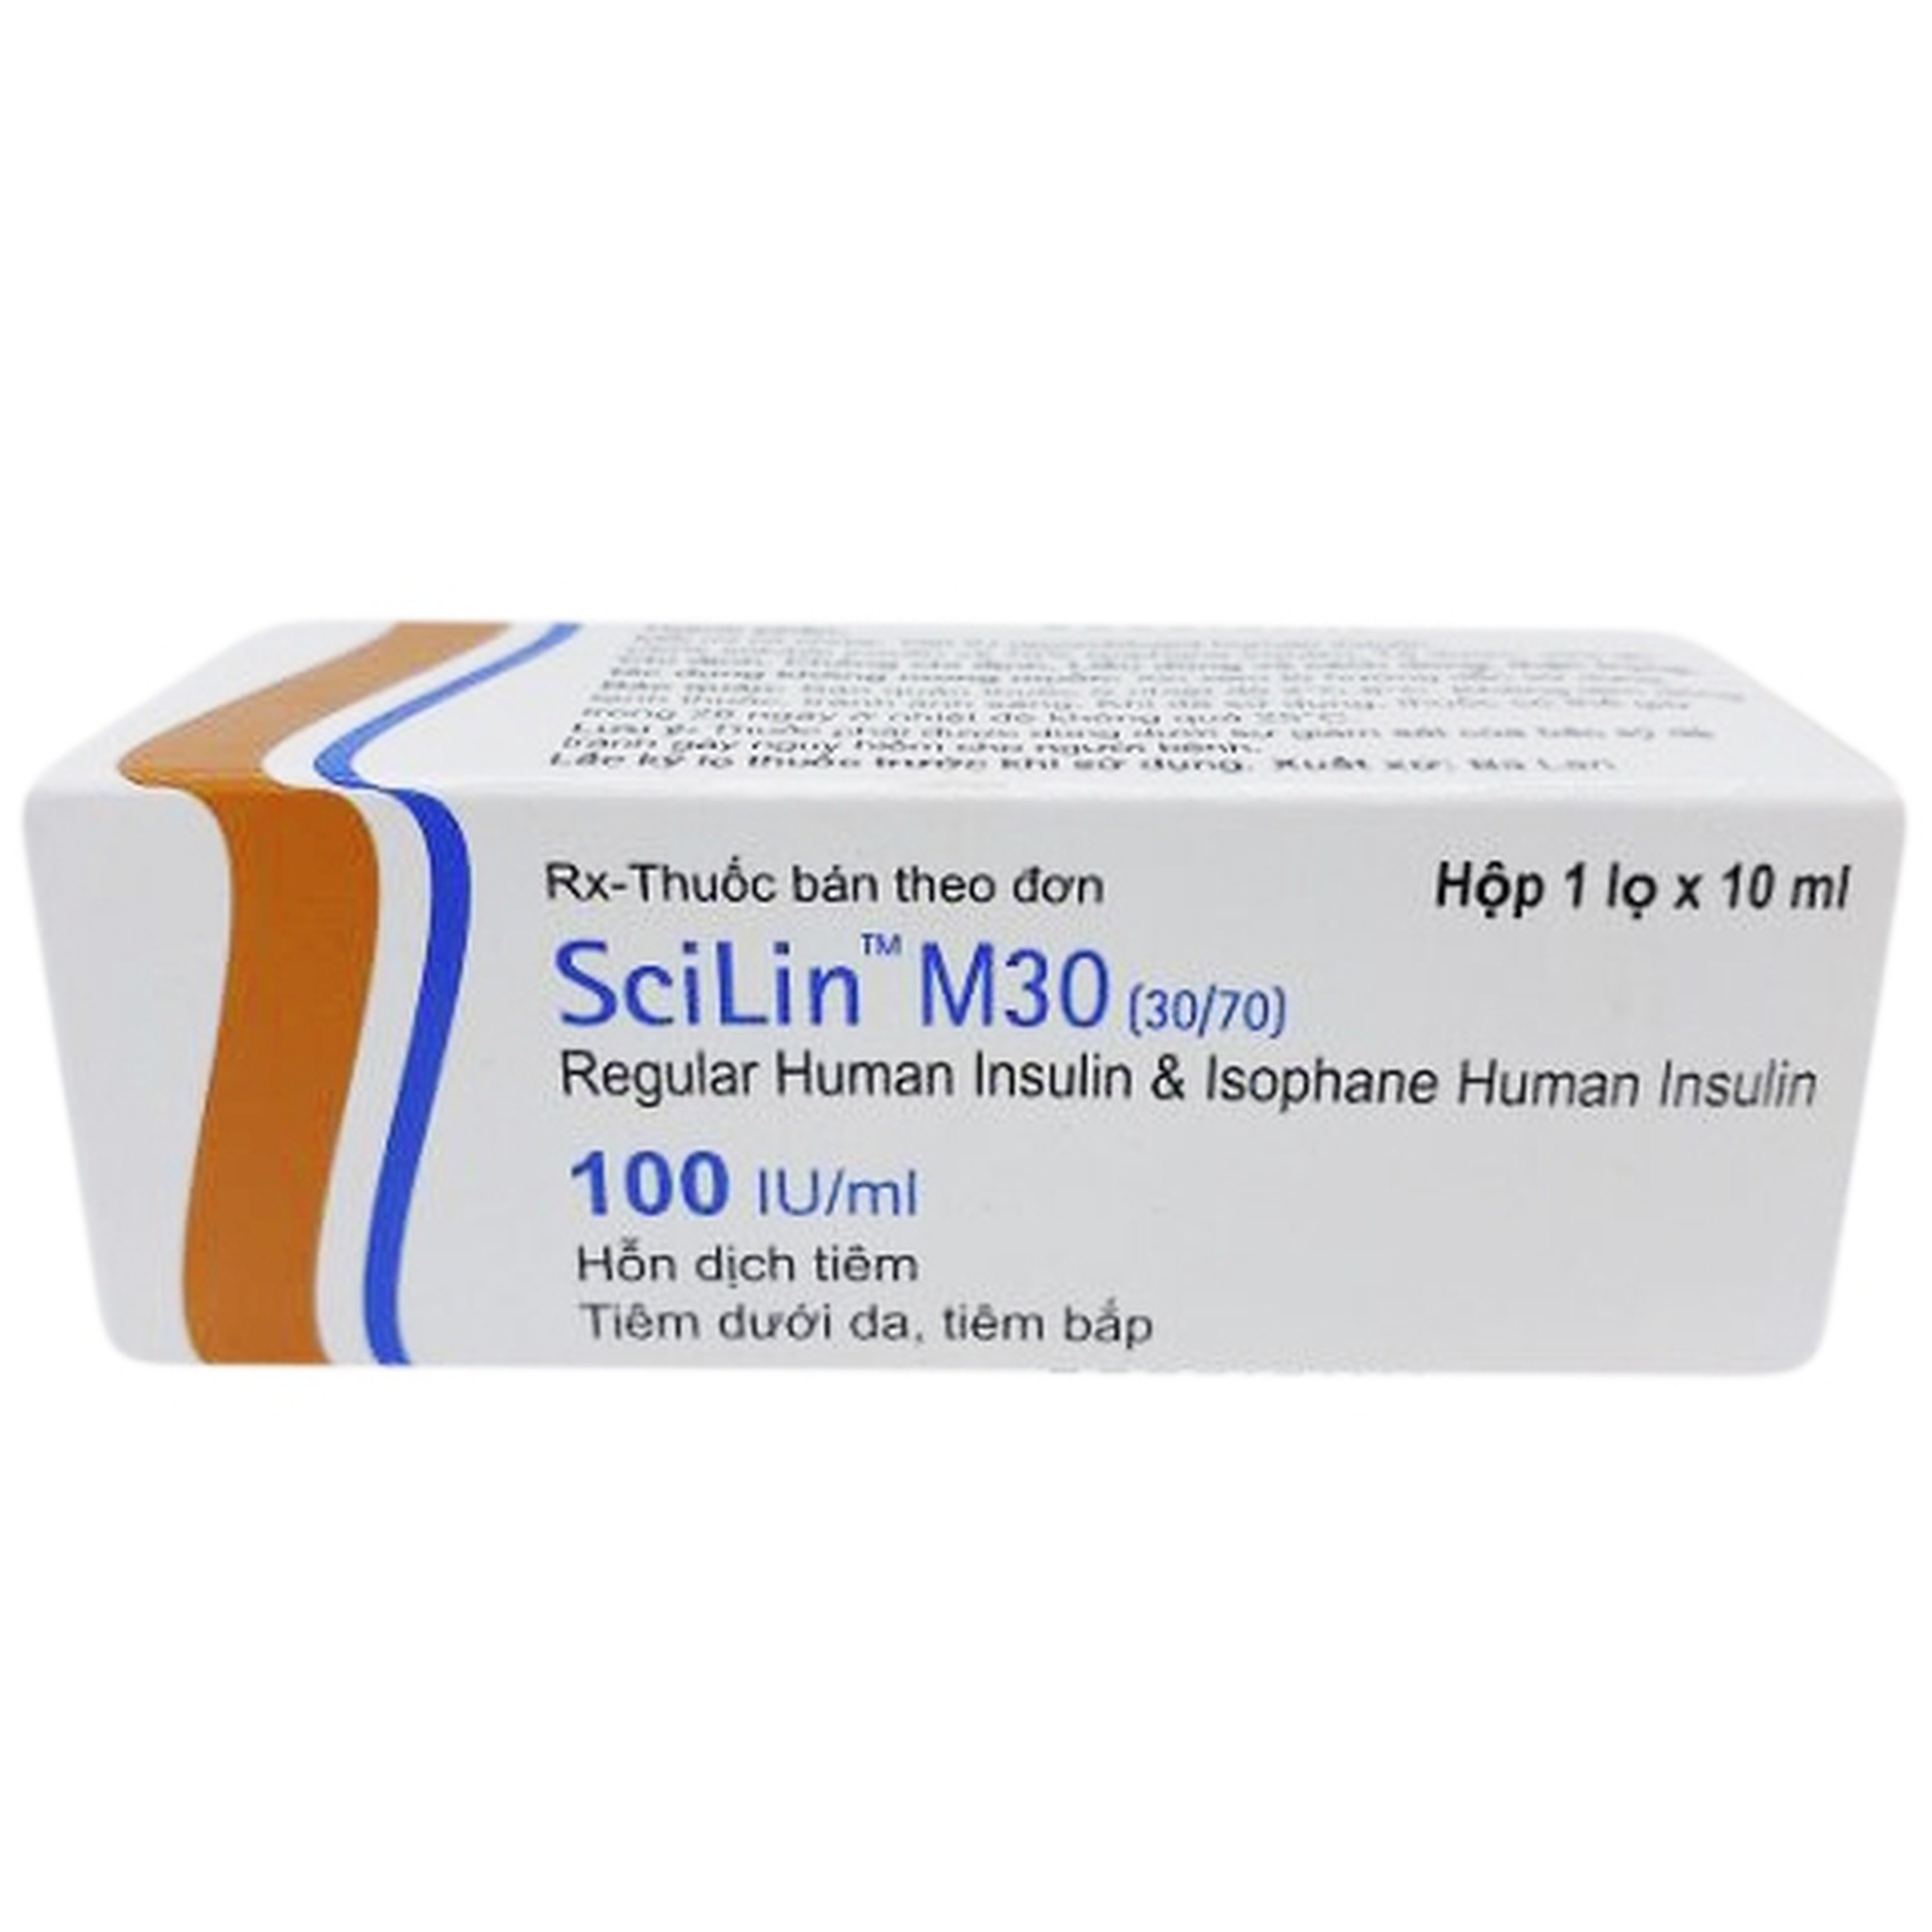 Hỗn dịch tiêm SciLin M30 100IU/ml Bioton điều trị đái tháo đường (10ml)